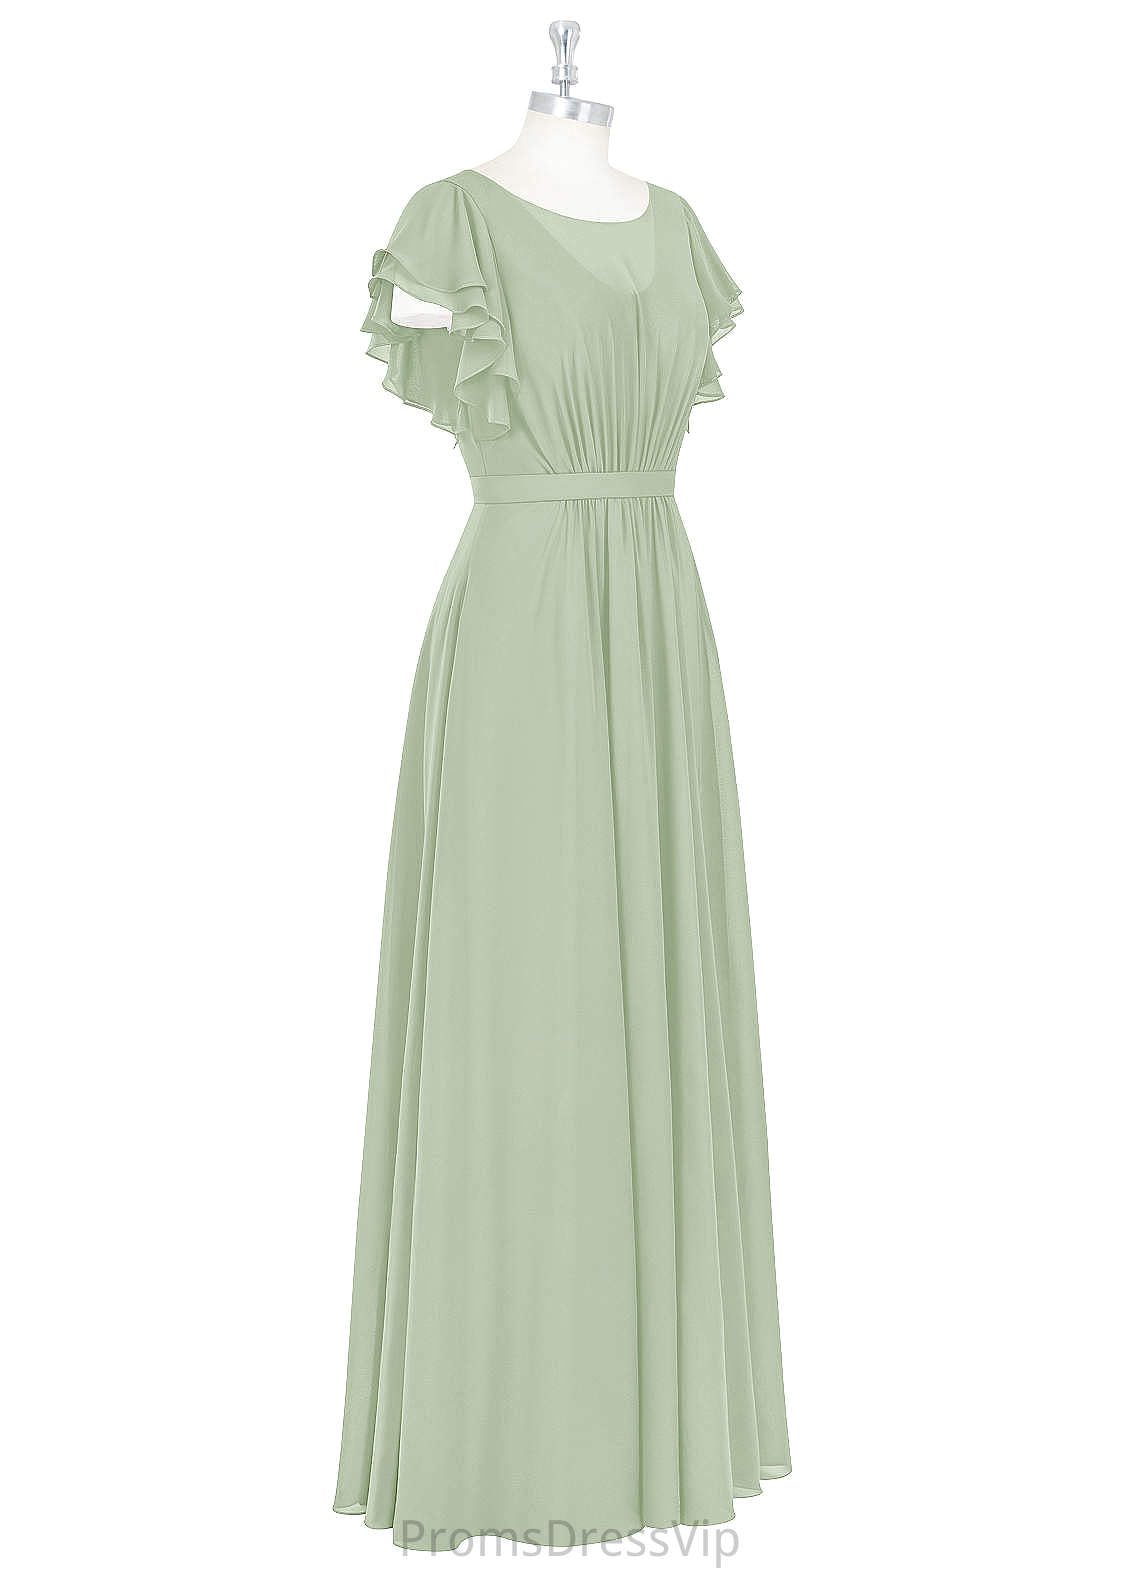 Thirza V-Neck Natural Waist Floor Length A-Line/Princess Sleeveless Bridesmaid Dresses